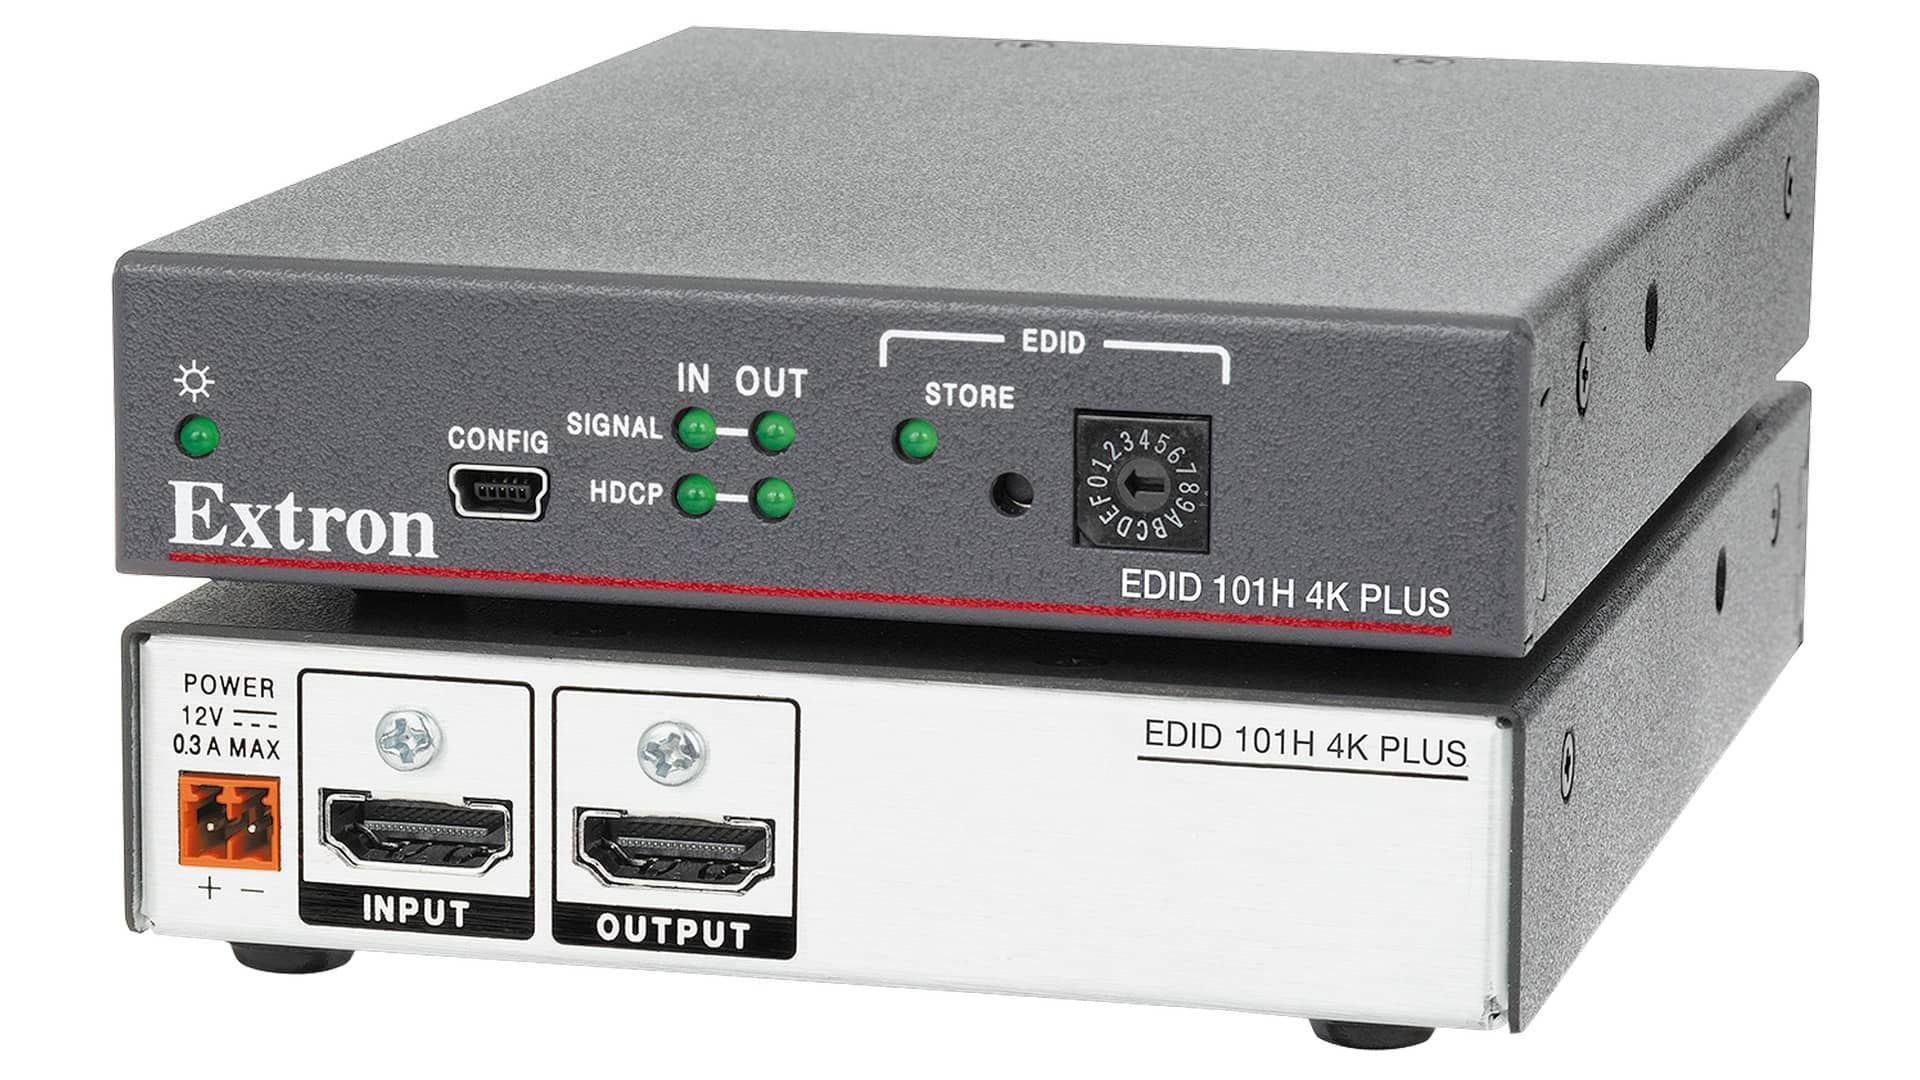 Эмулятор EDID для HDMI EXTRON EDID 101H 4K PLUS, 60-1680-01